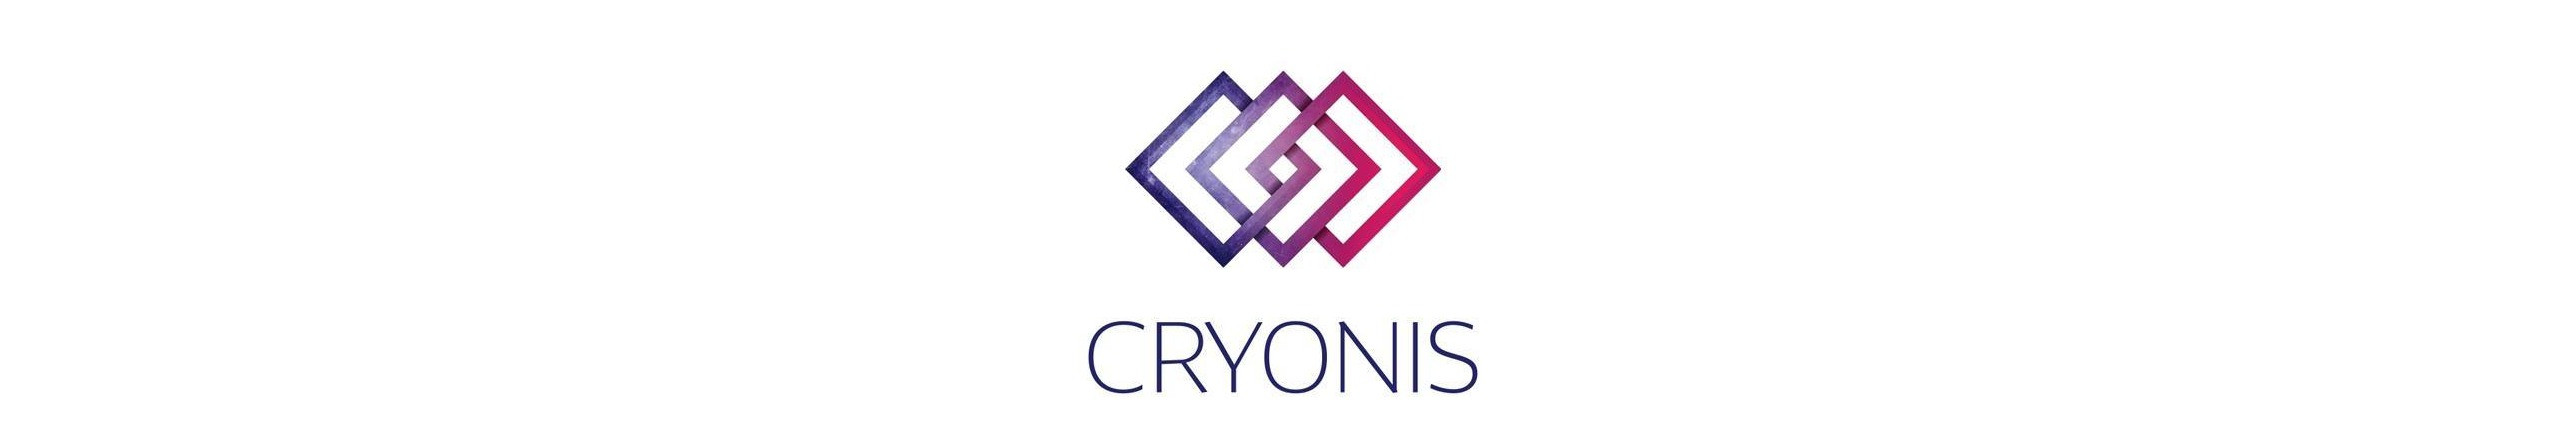 Cryonis - Cryo & Ioni Spa Marbella